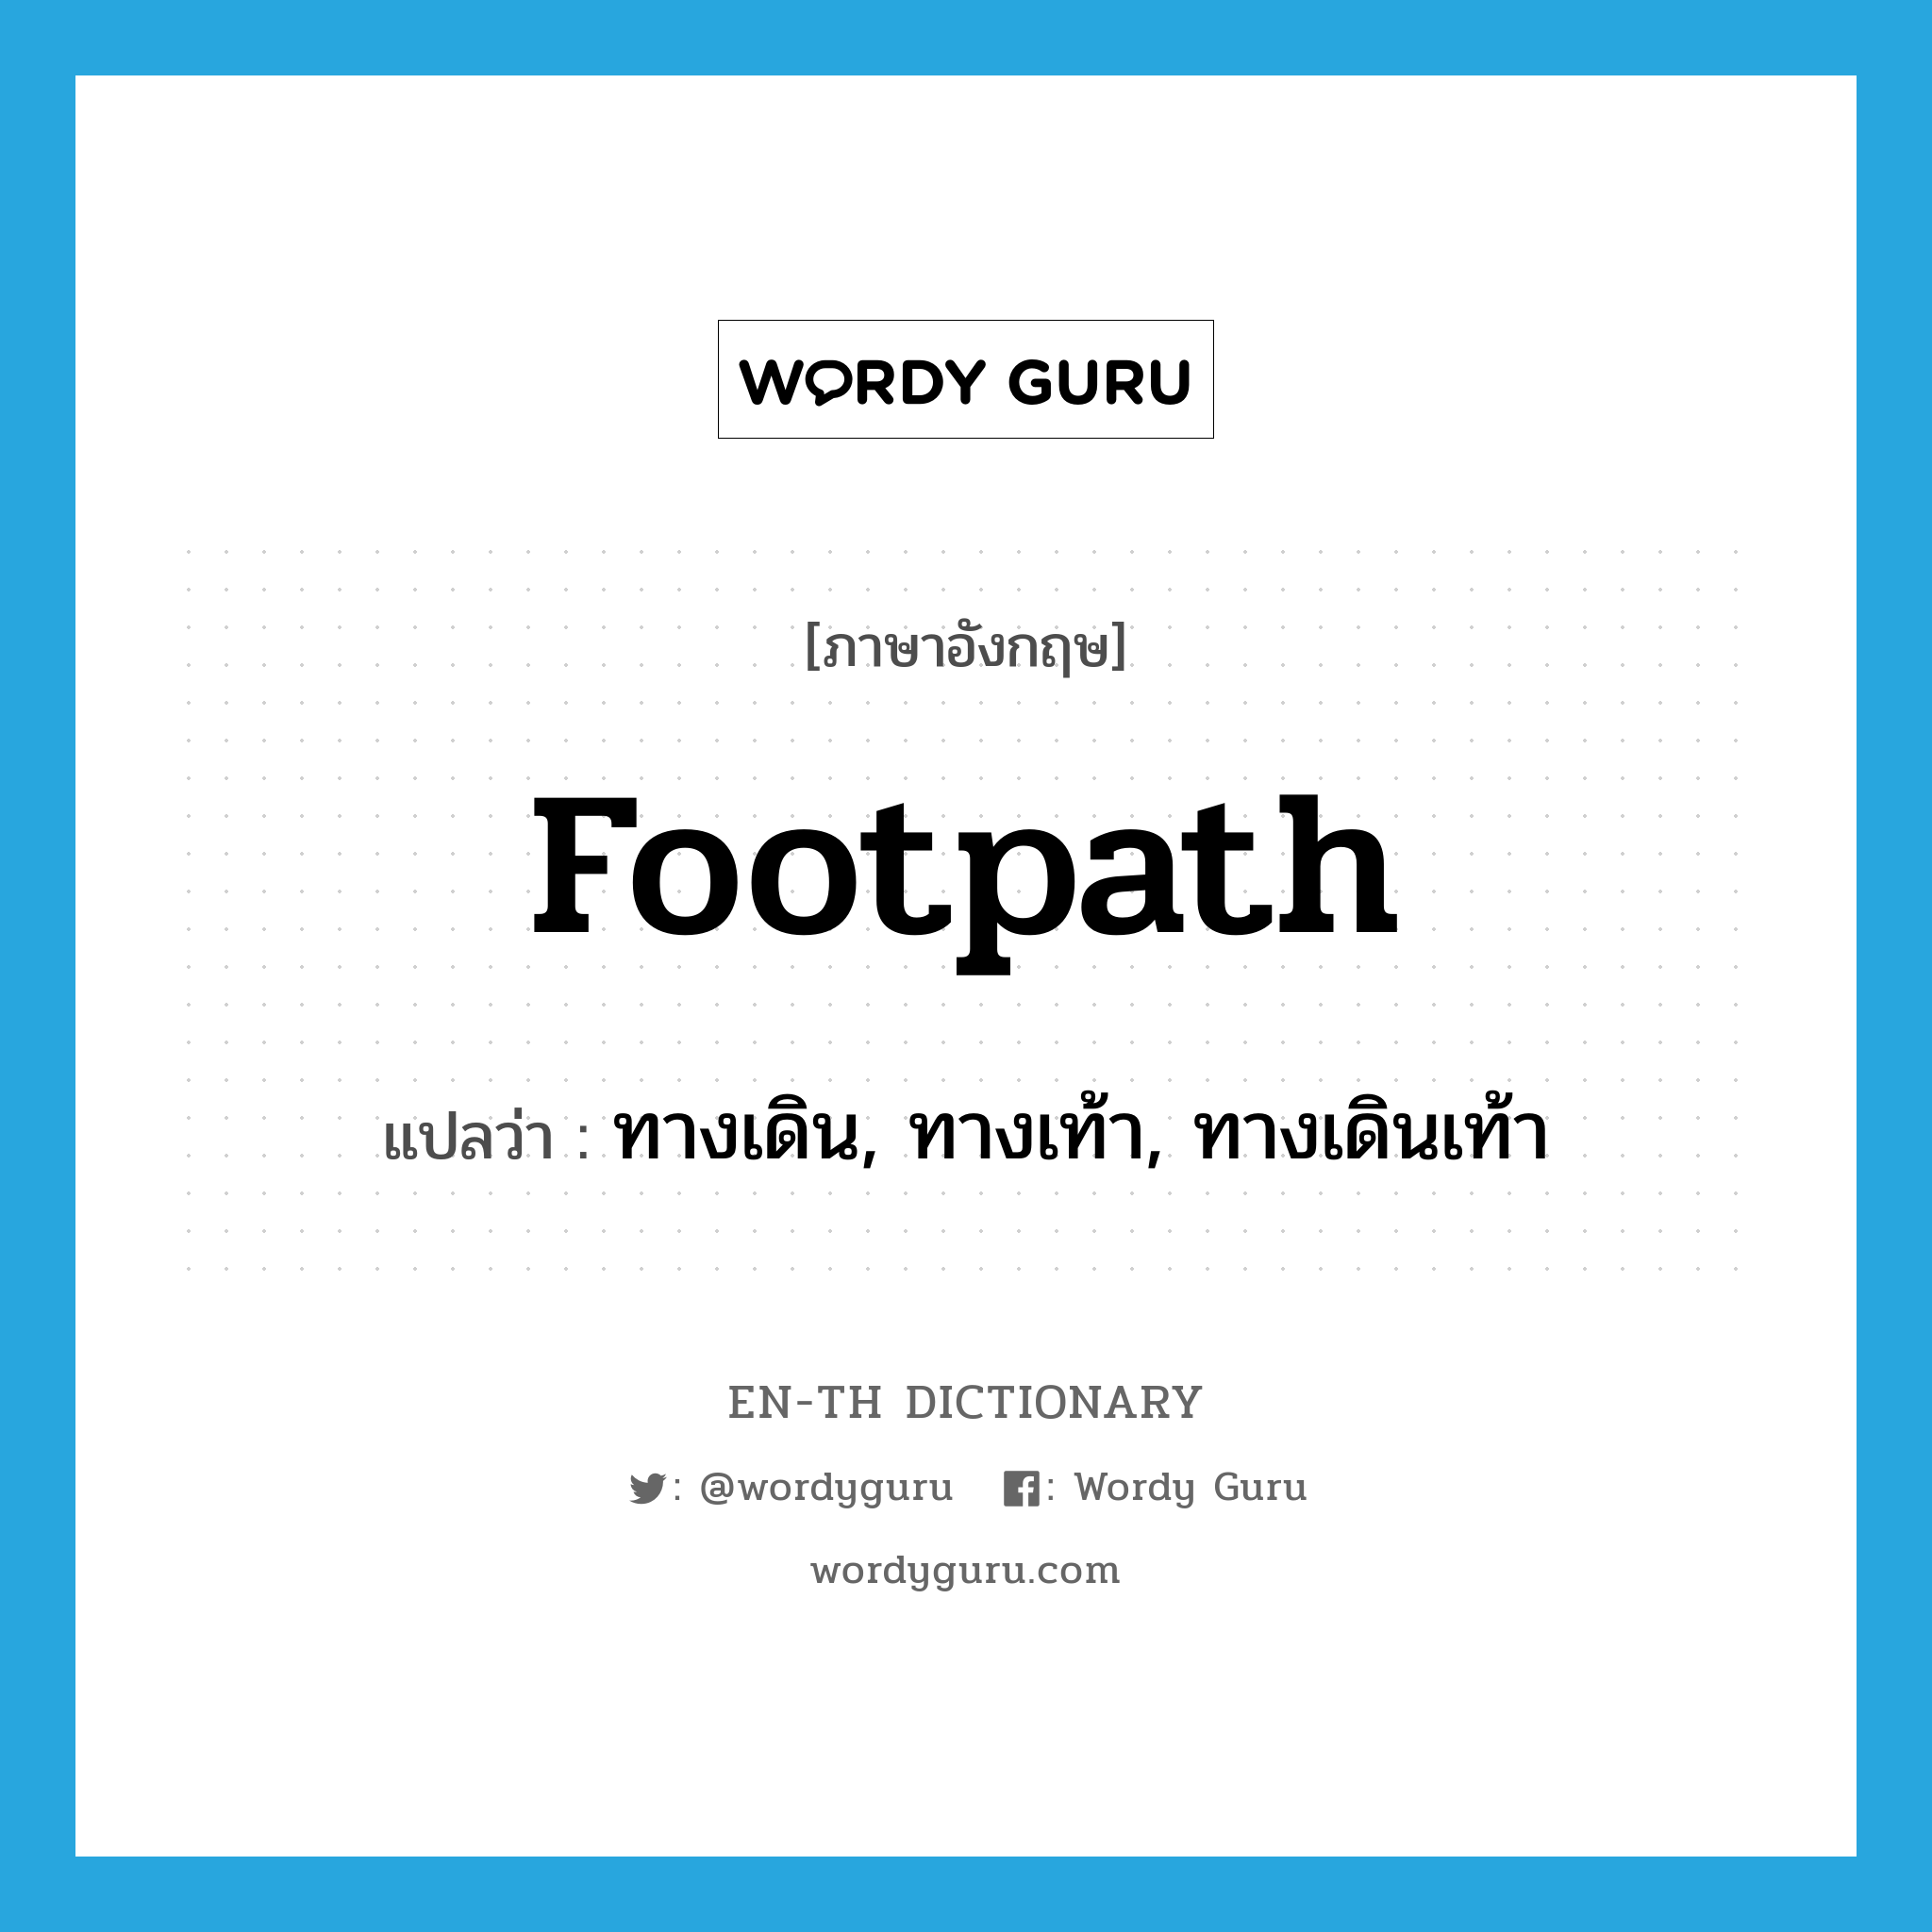 ทางเดิน, ทางเท้า, ทางเดินเท้า ภาษาอังกฤษ?, คำศัพท์ภาษาอังกฤษ ทางเดิน, ทางเท้า, ทางเดินเท้า แปลว่า footpath ประเภท N หมวด N